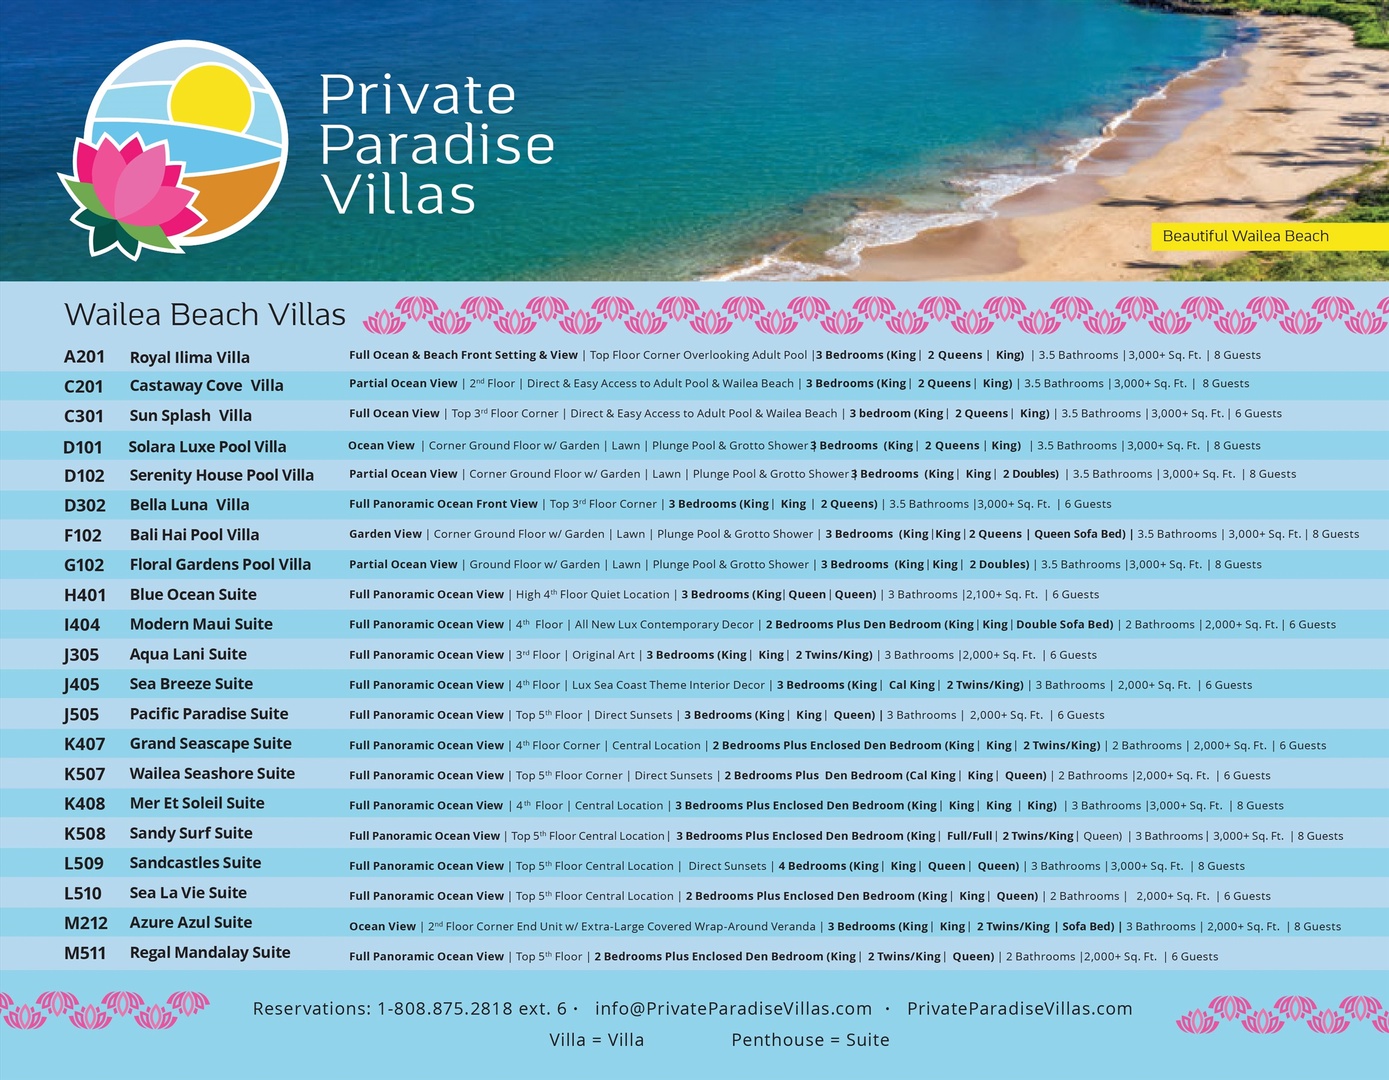 Wailea Vacation Rentals, Sea La Vie L510 at Wailea Beach Villas* - 